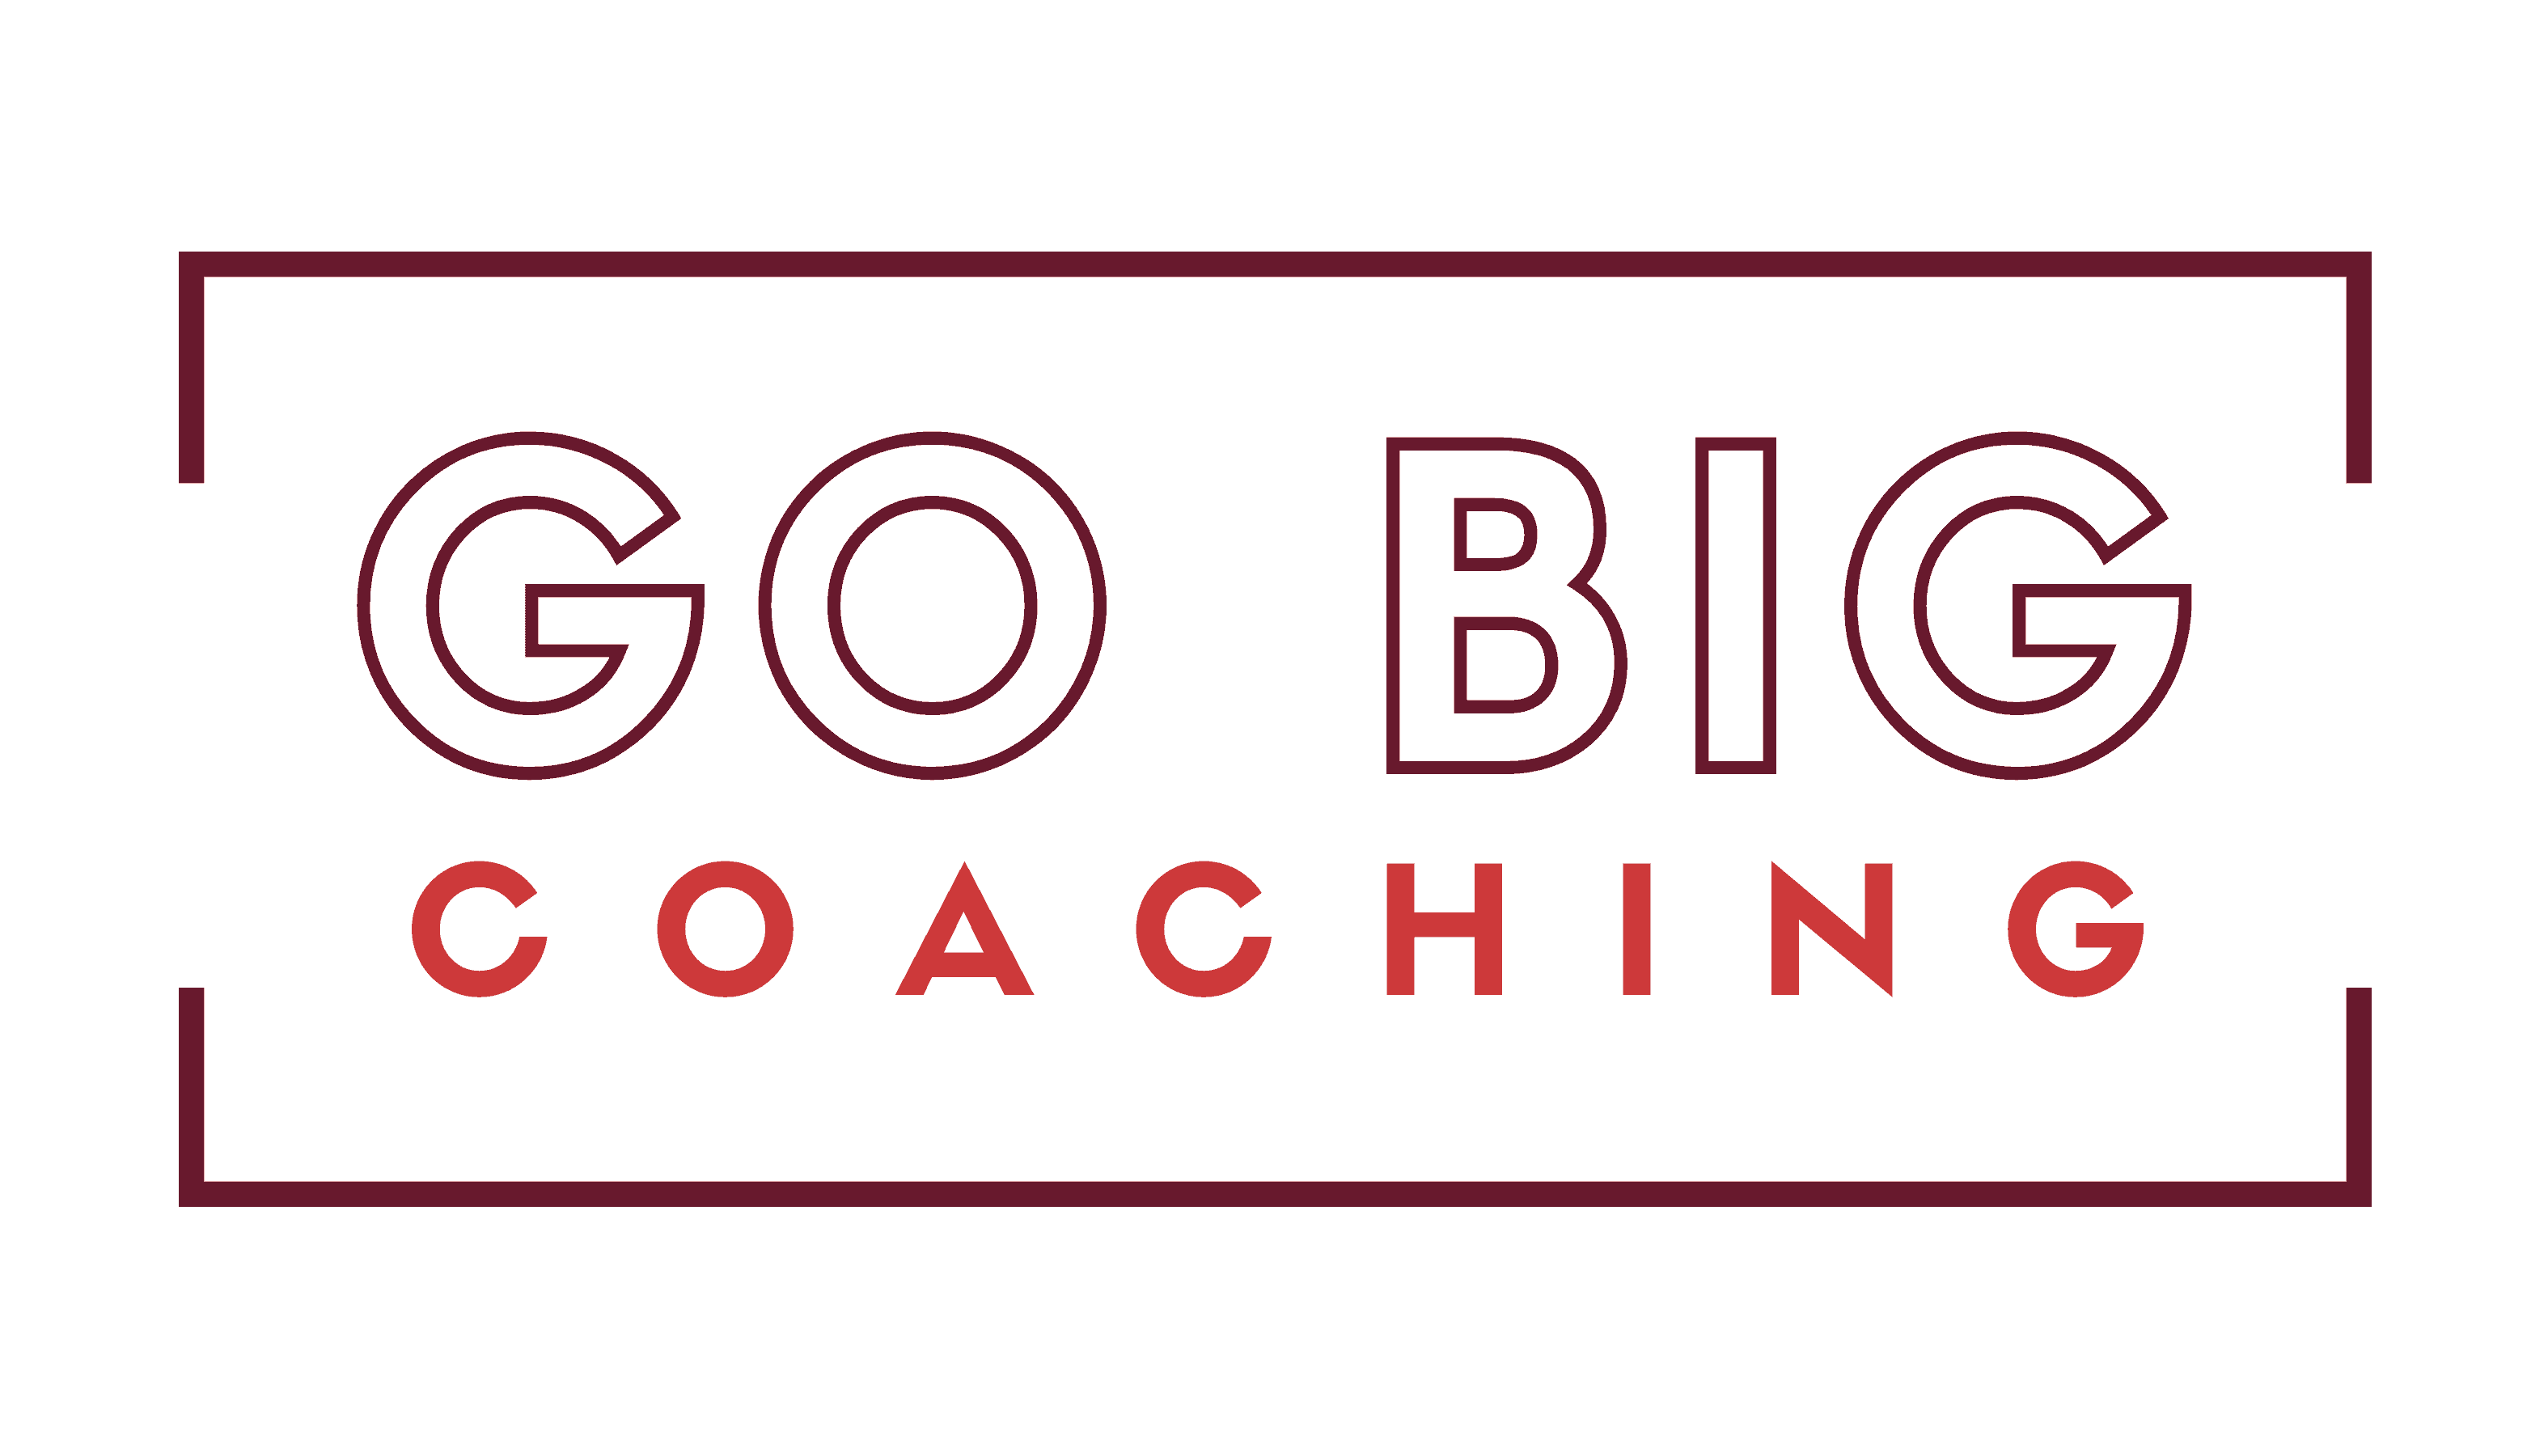 Go Big Coaching. Micha Goebig.